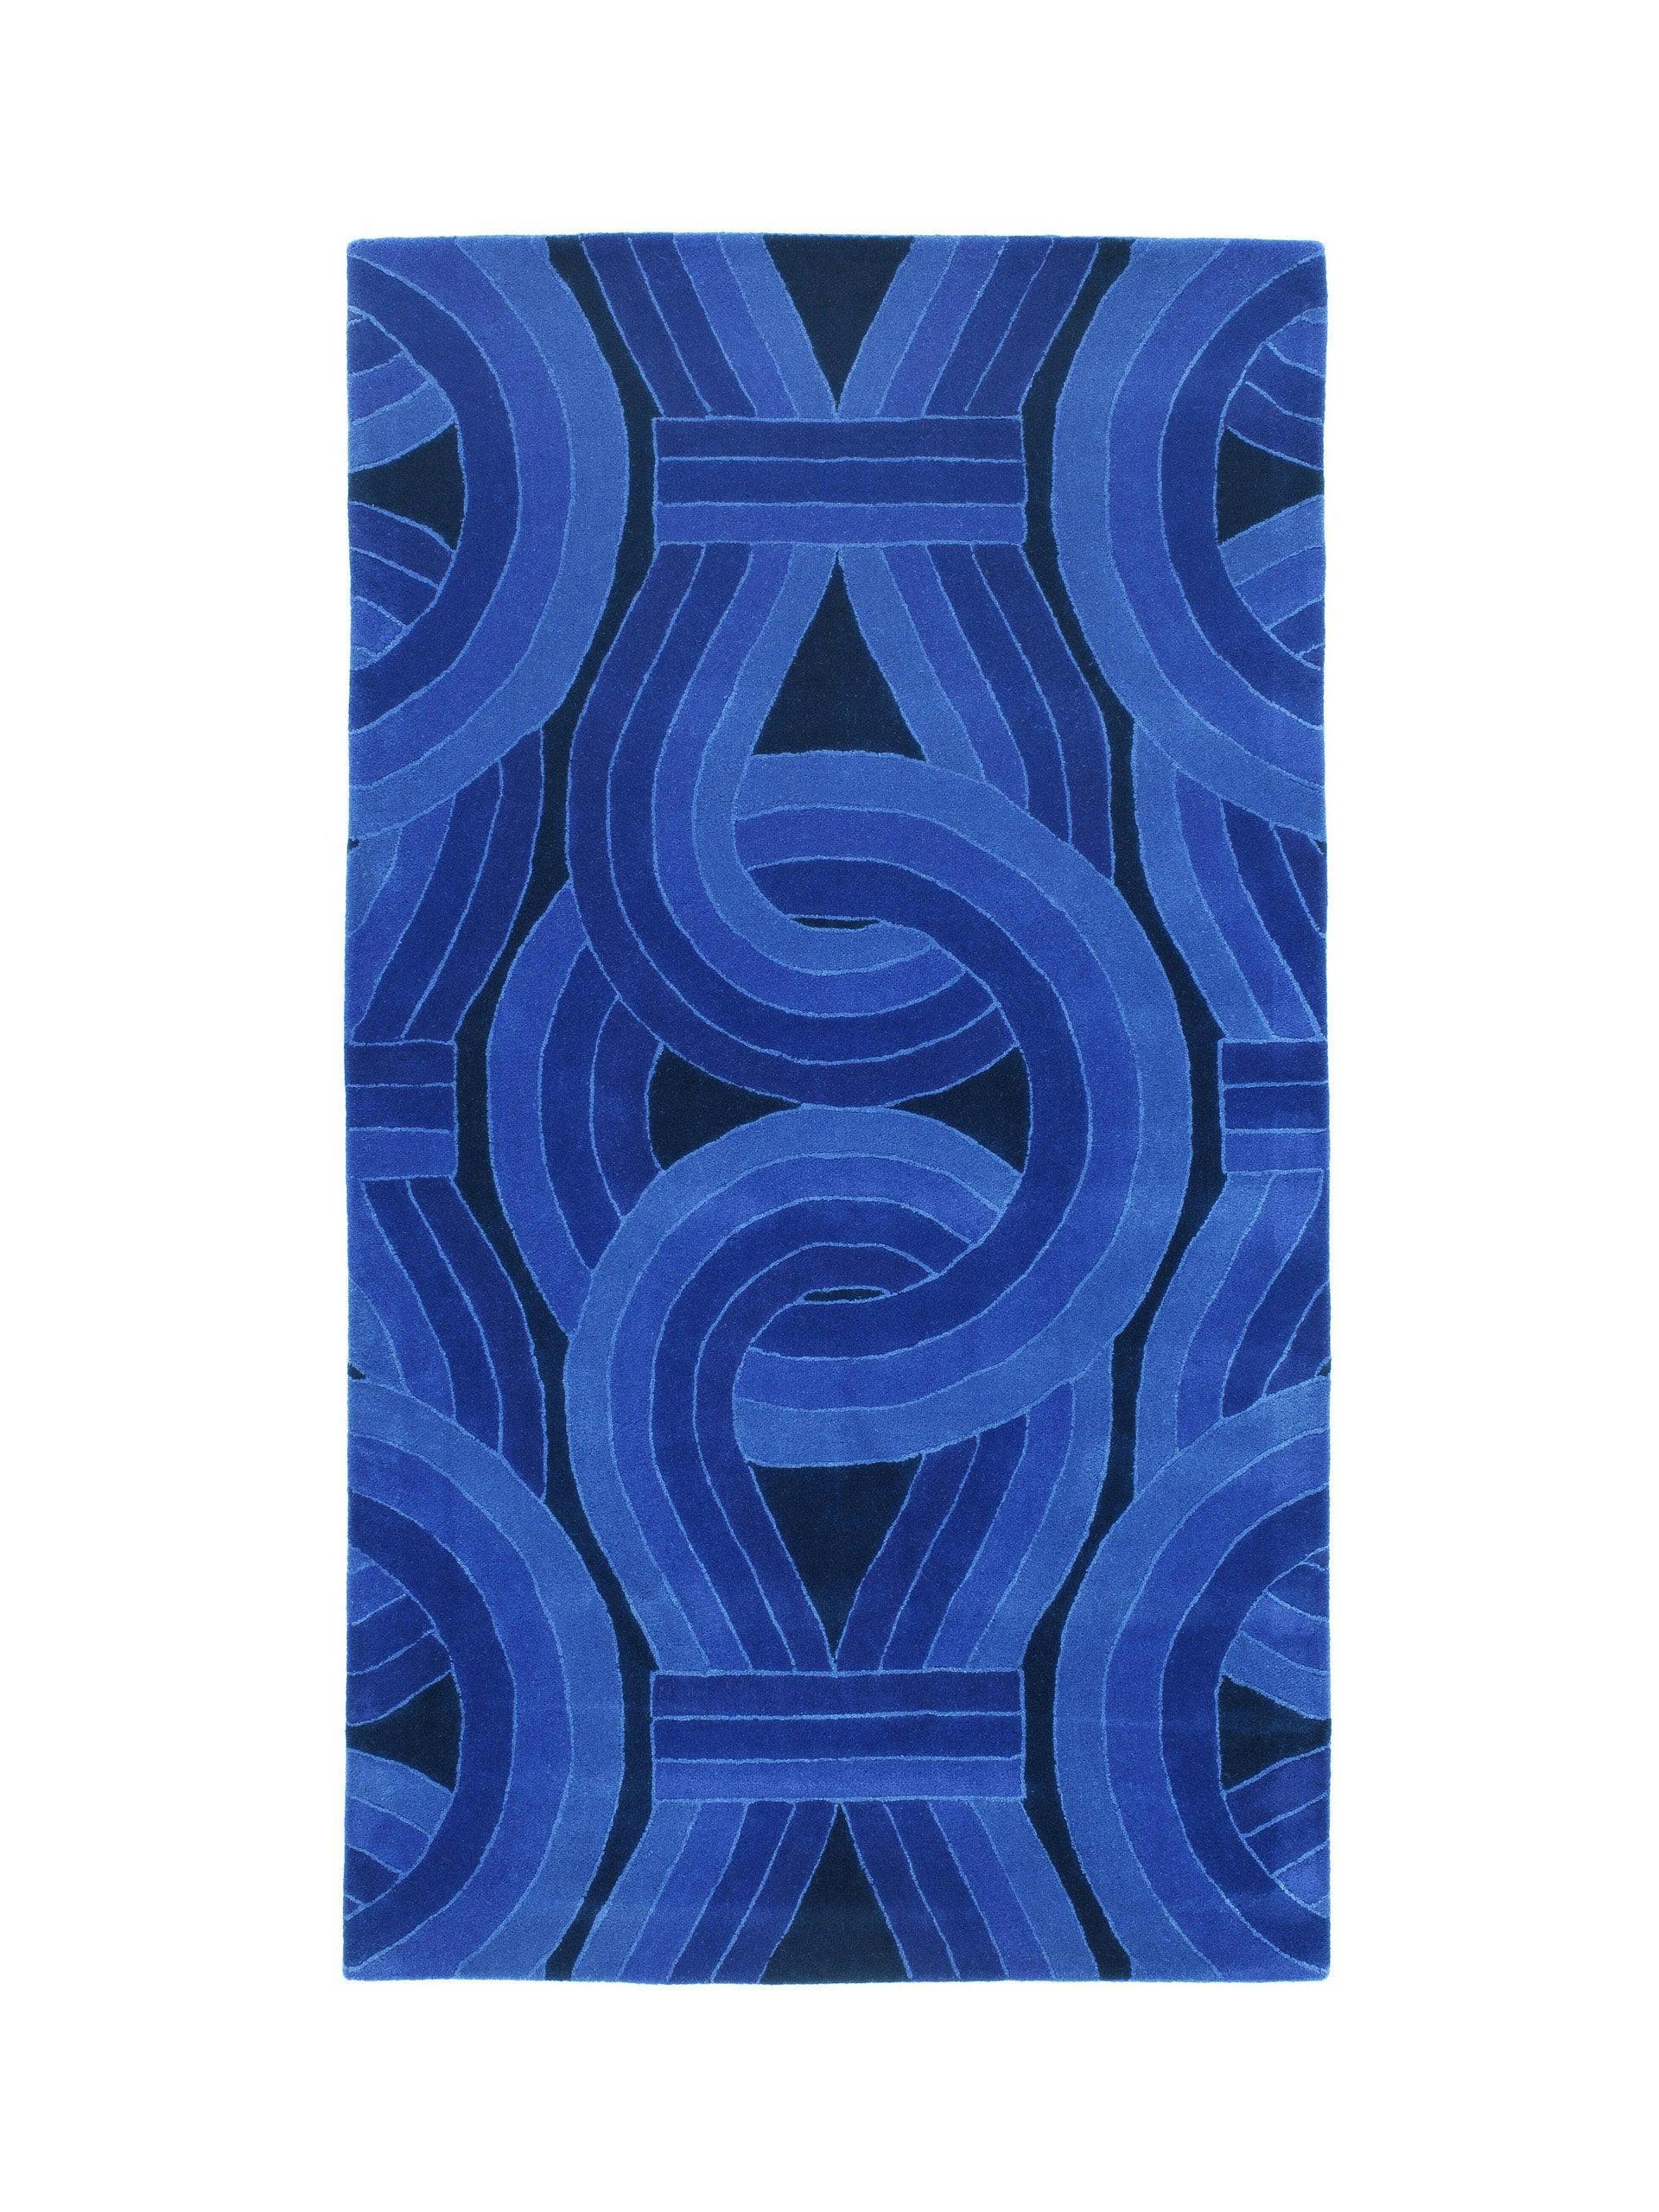 Solar Blue by Lara Bohinc – 1.75 x 1m rug